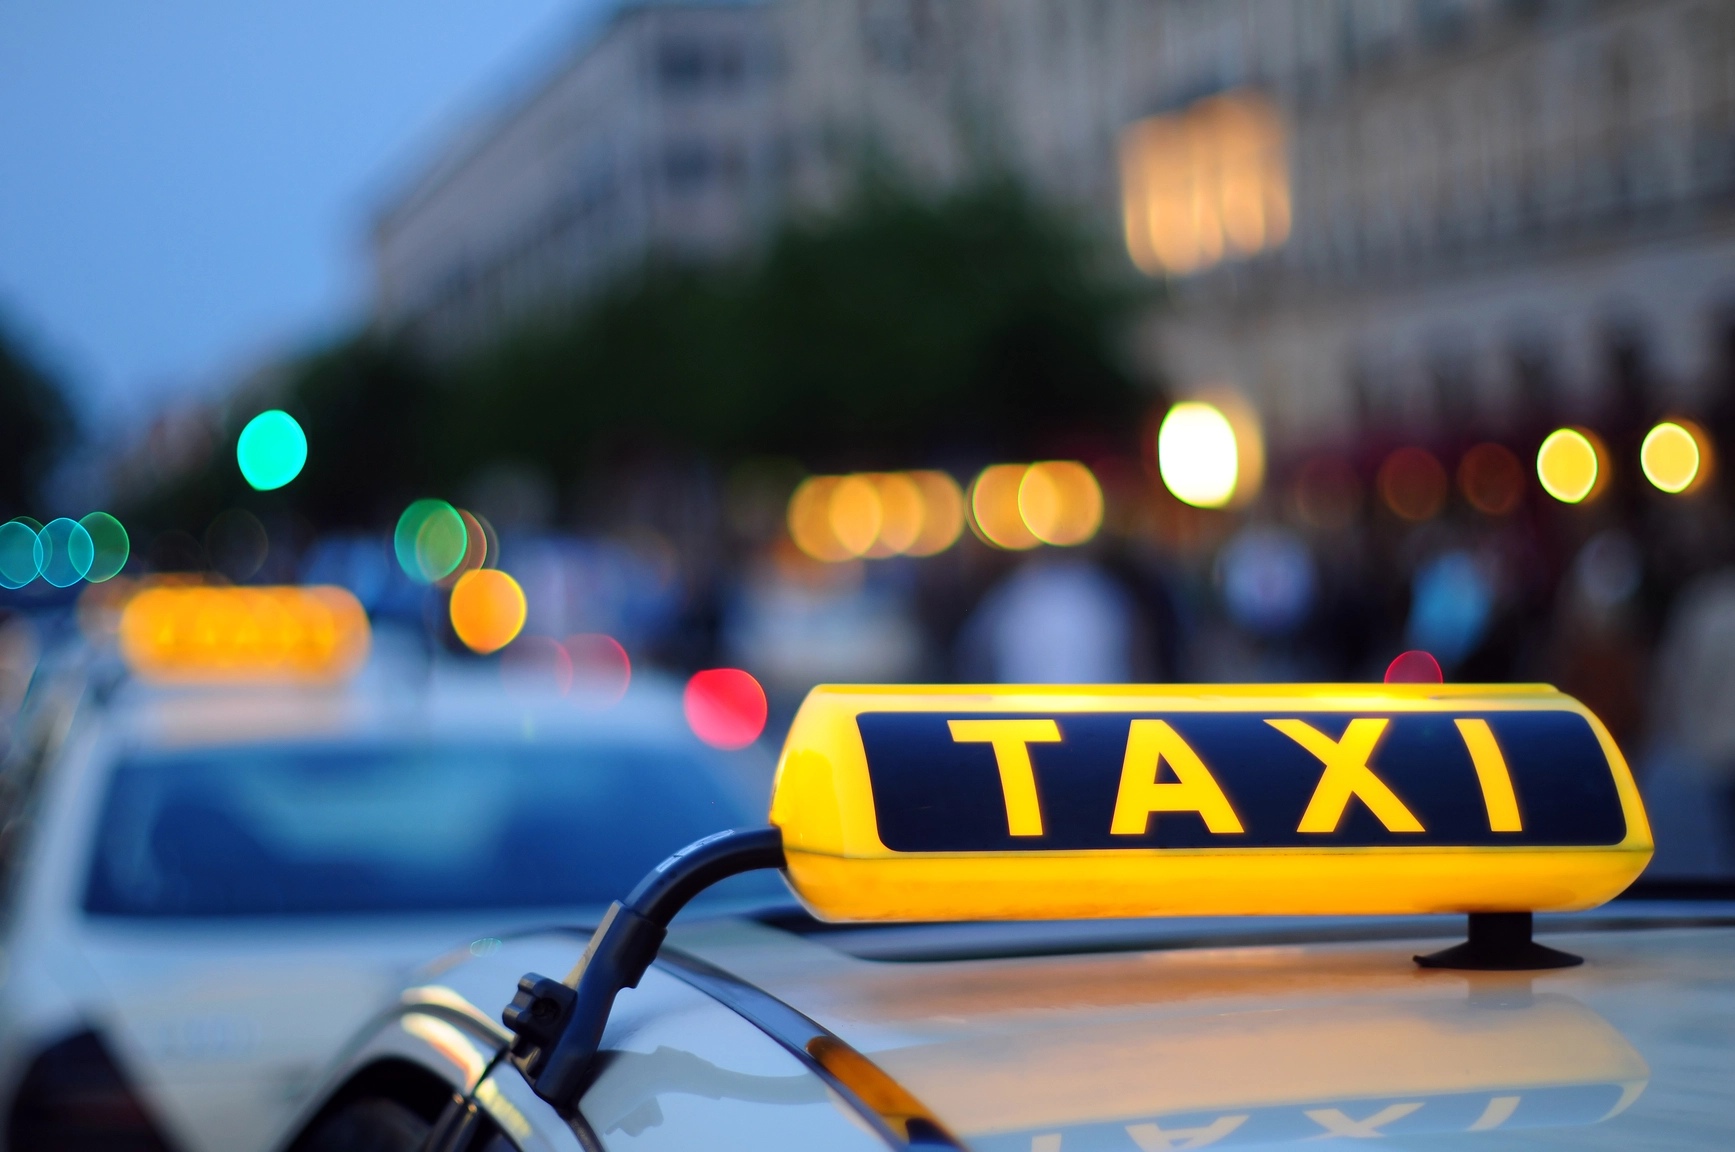 Почему передвижение в такси так популярно? Преимущества служб такси